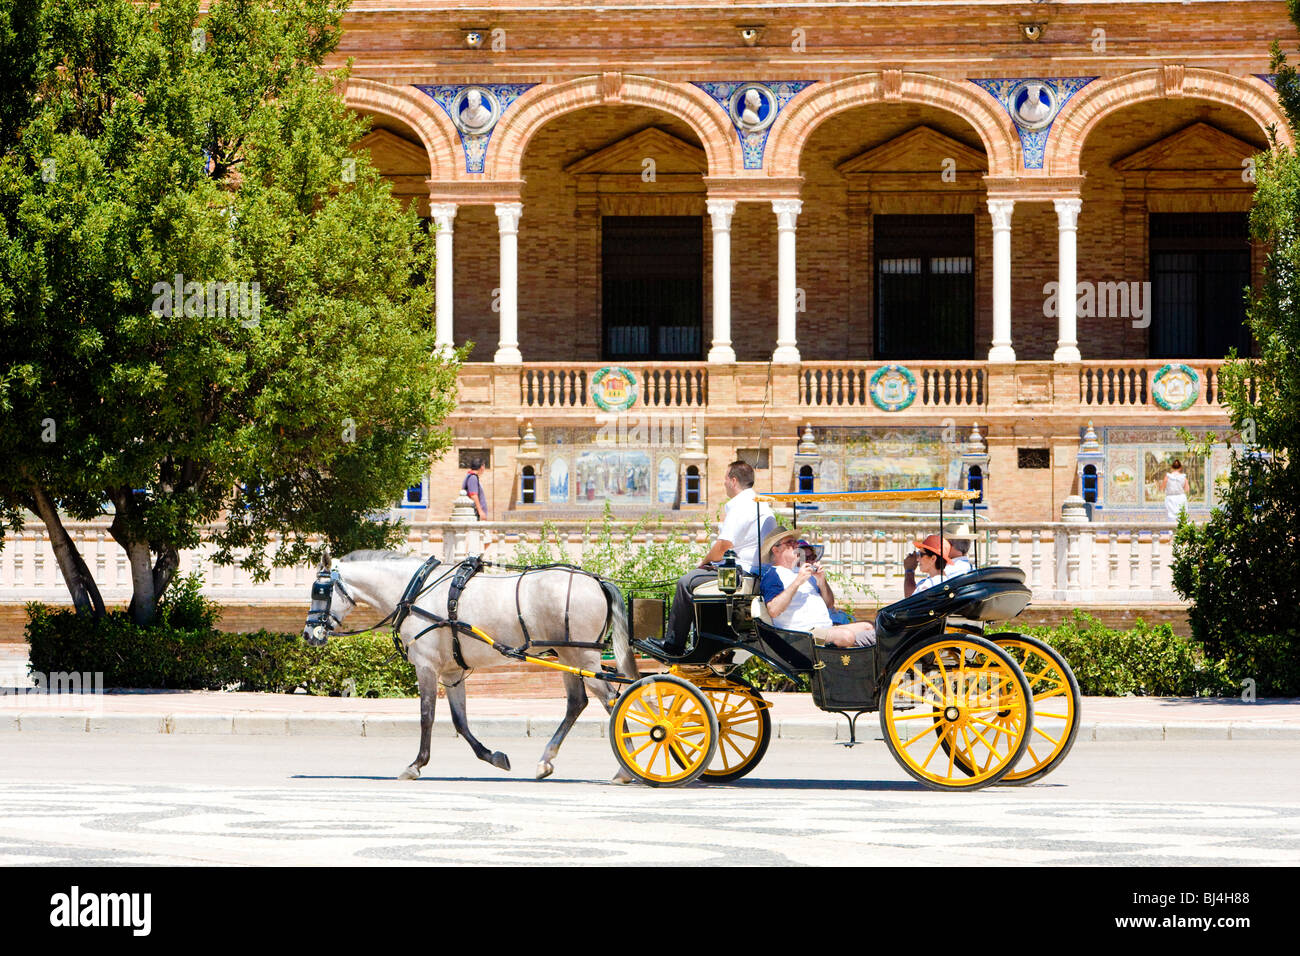 Wagen mit Touristen am spanischen Platz (Plaza de Espana), Sevilla, Andalusien, Spanien Stockfoto